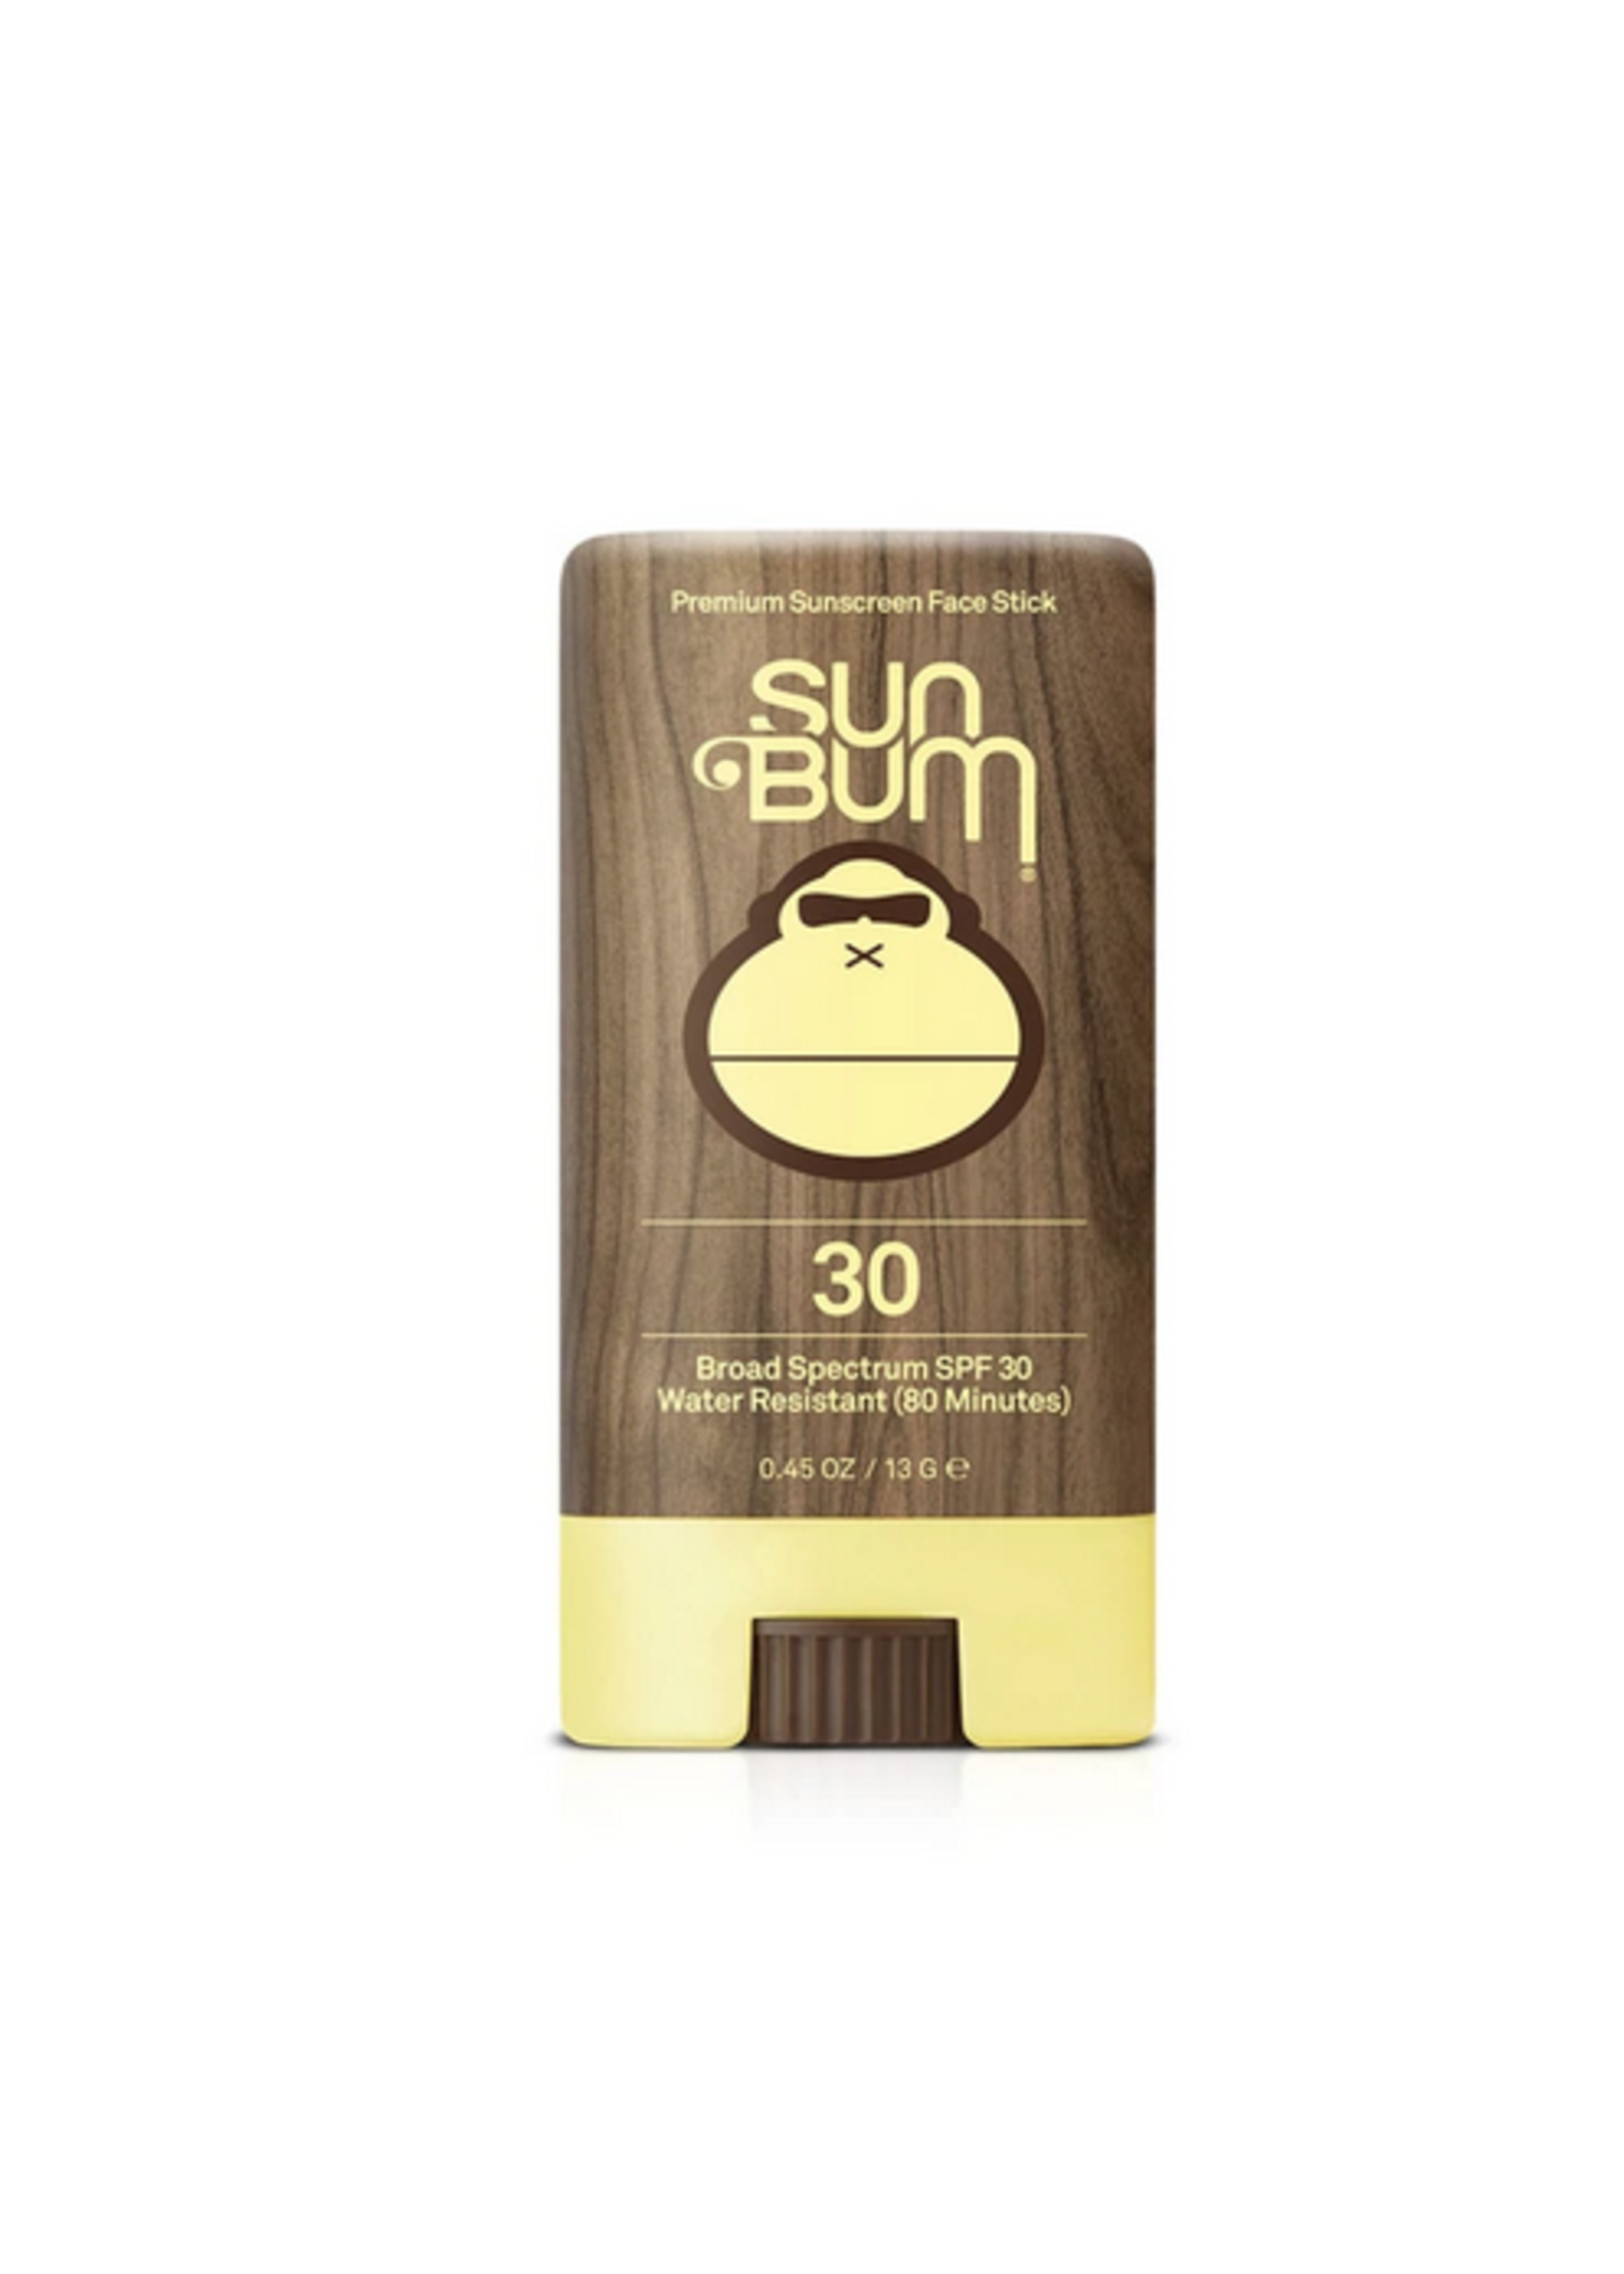 sun bum original spf30 sunscreen face stick